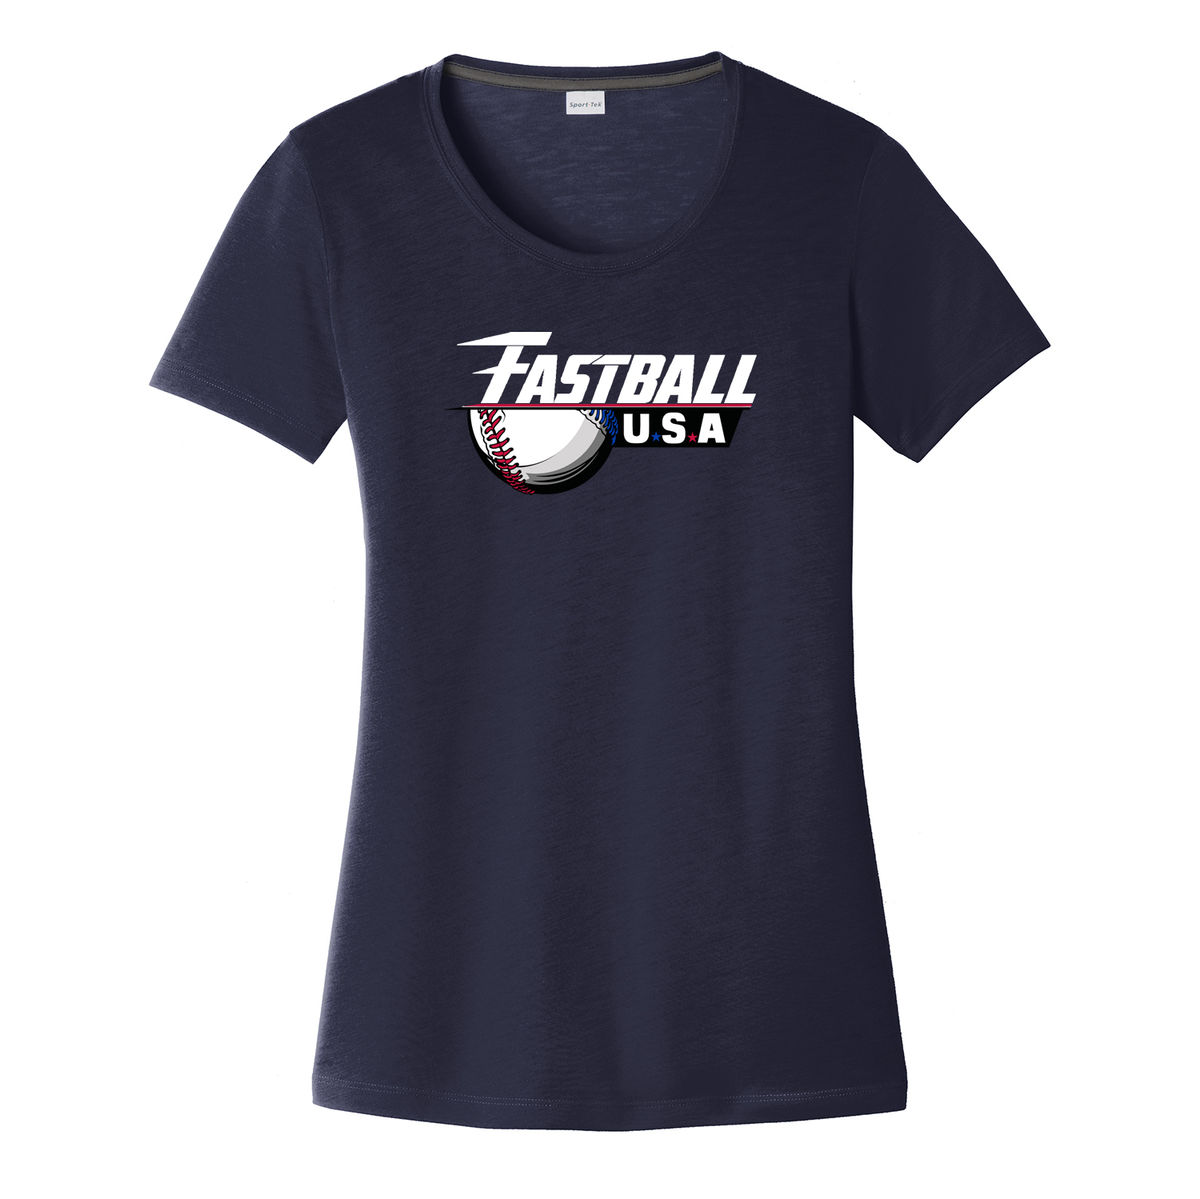 Fastball USA Academy Baseball Women's CottonTouch Performance T-Shirt